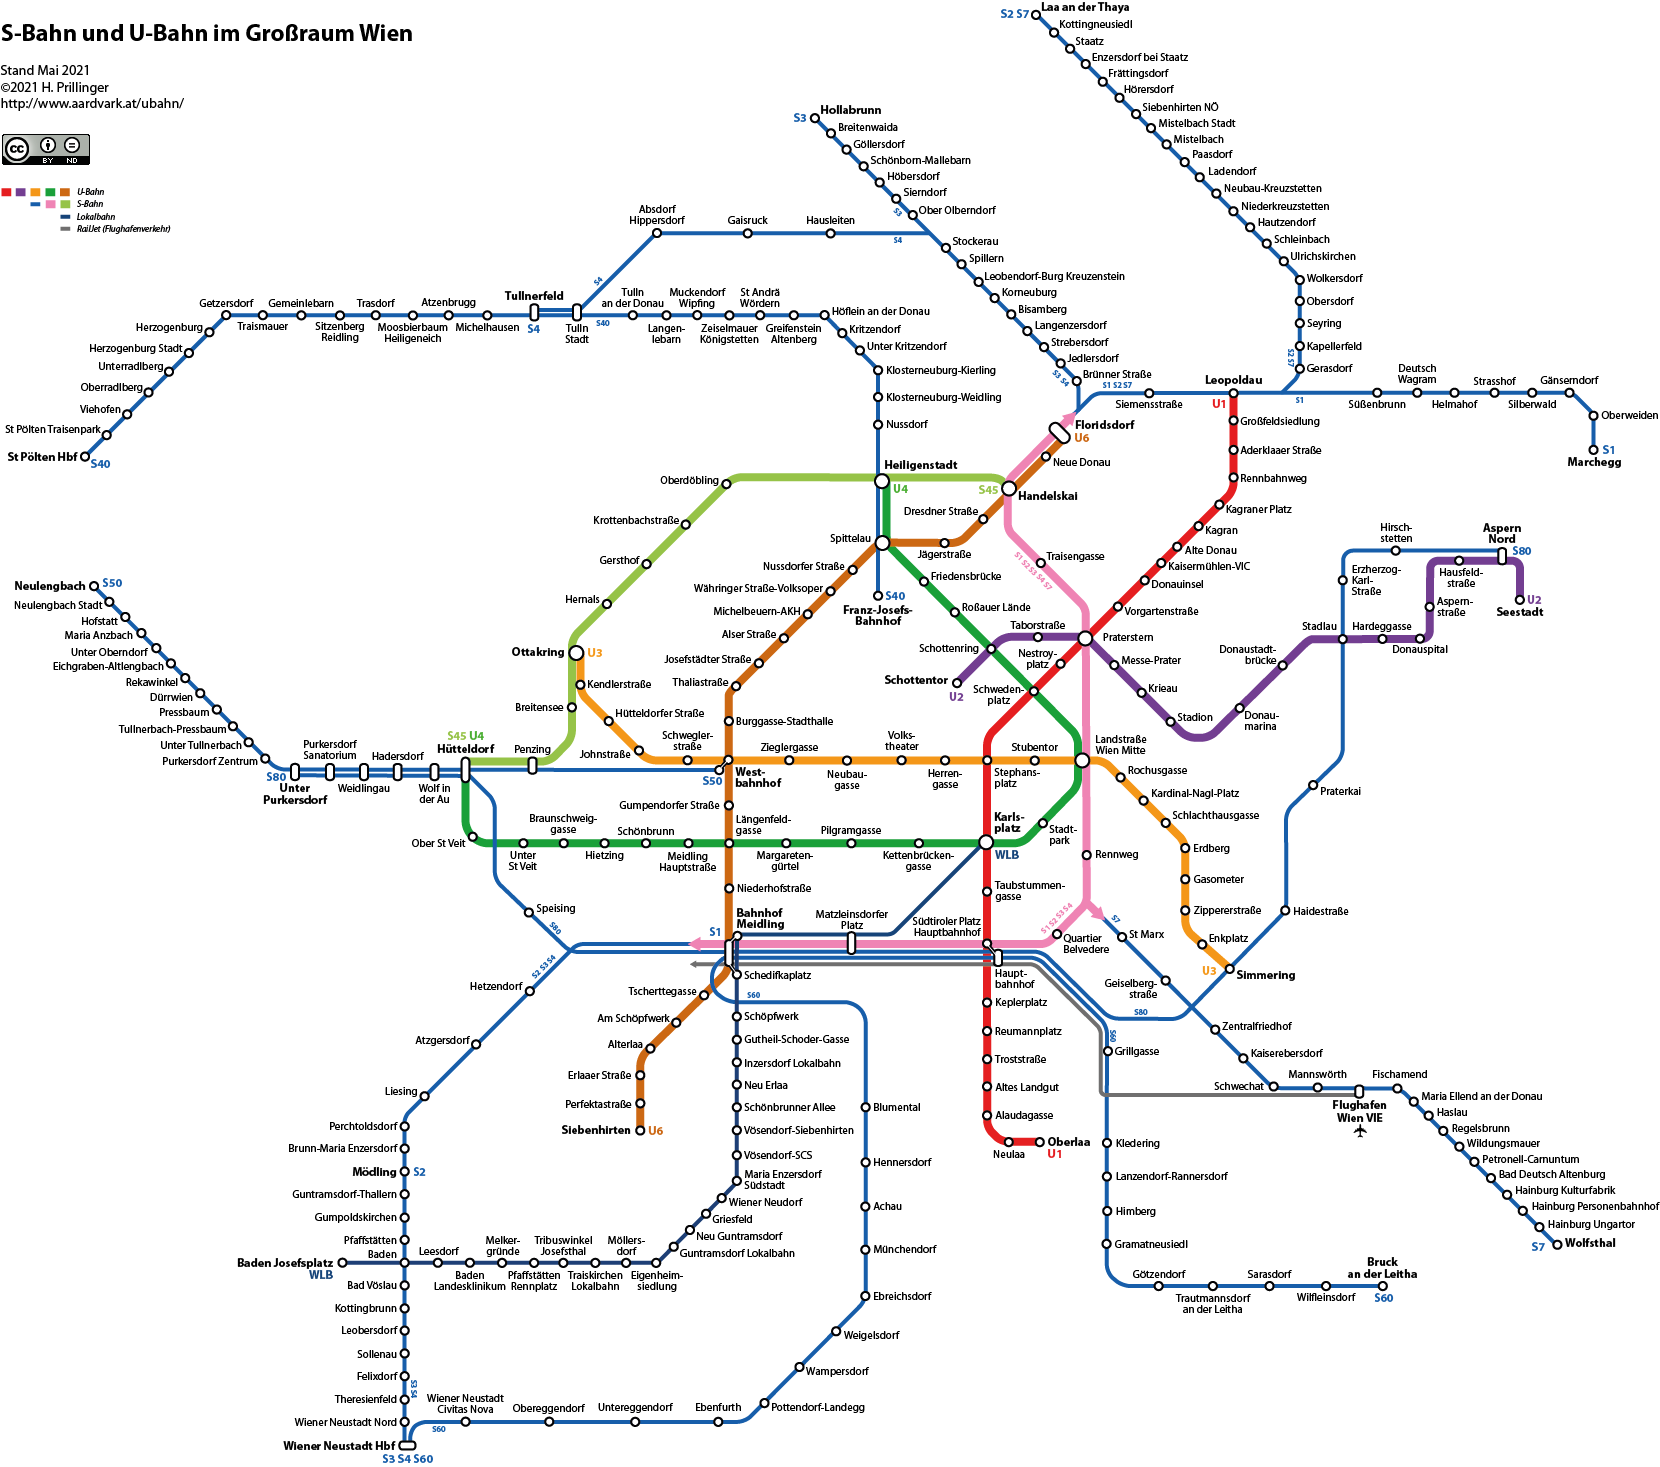 Netzplan S-Bahn und U-Bahn Großraum Wien